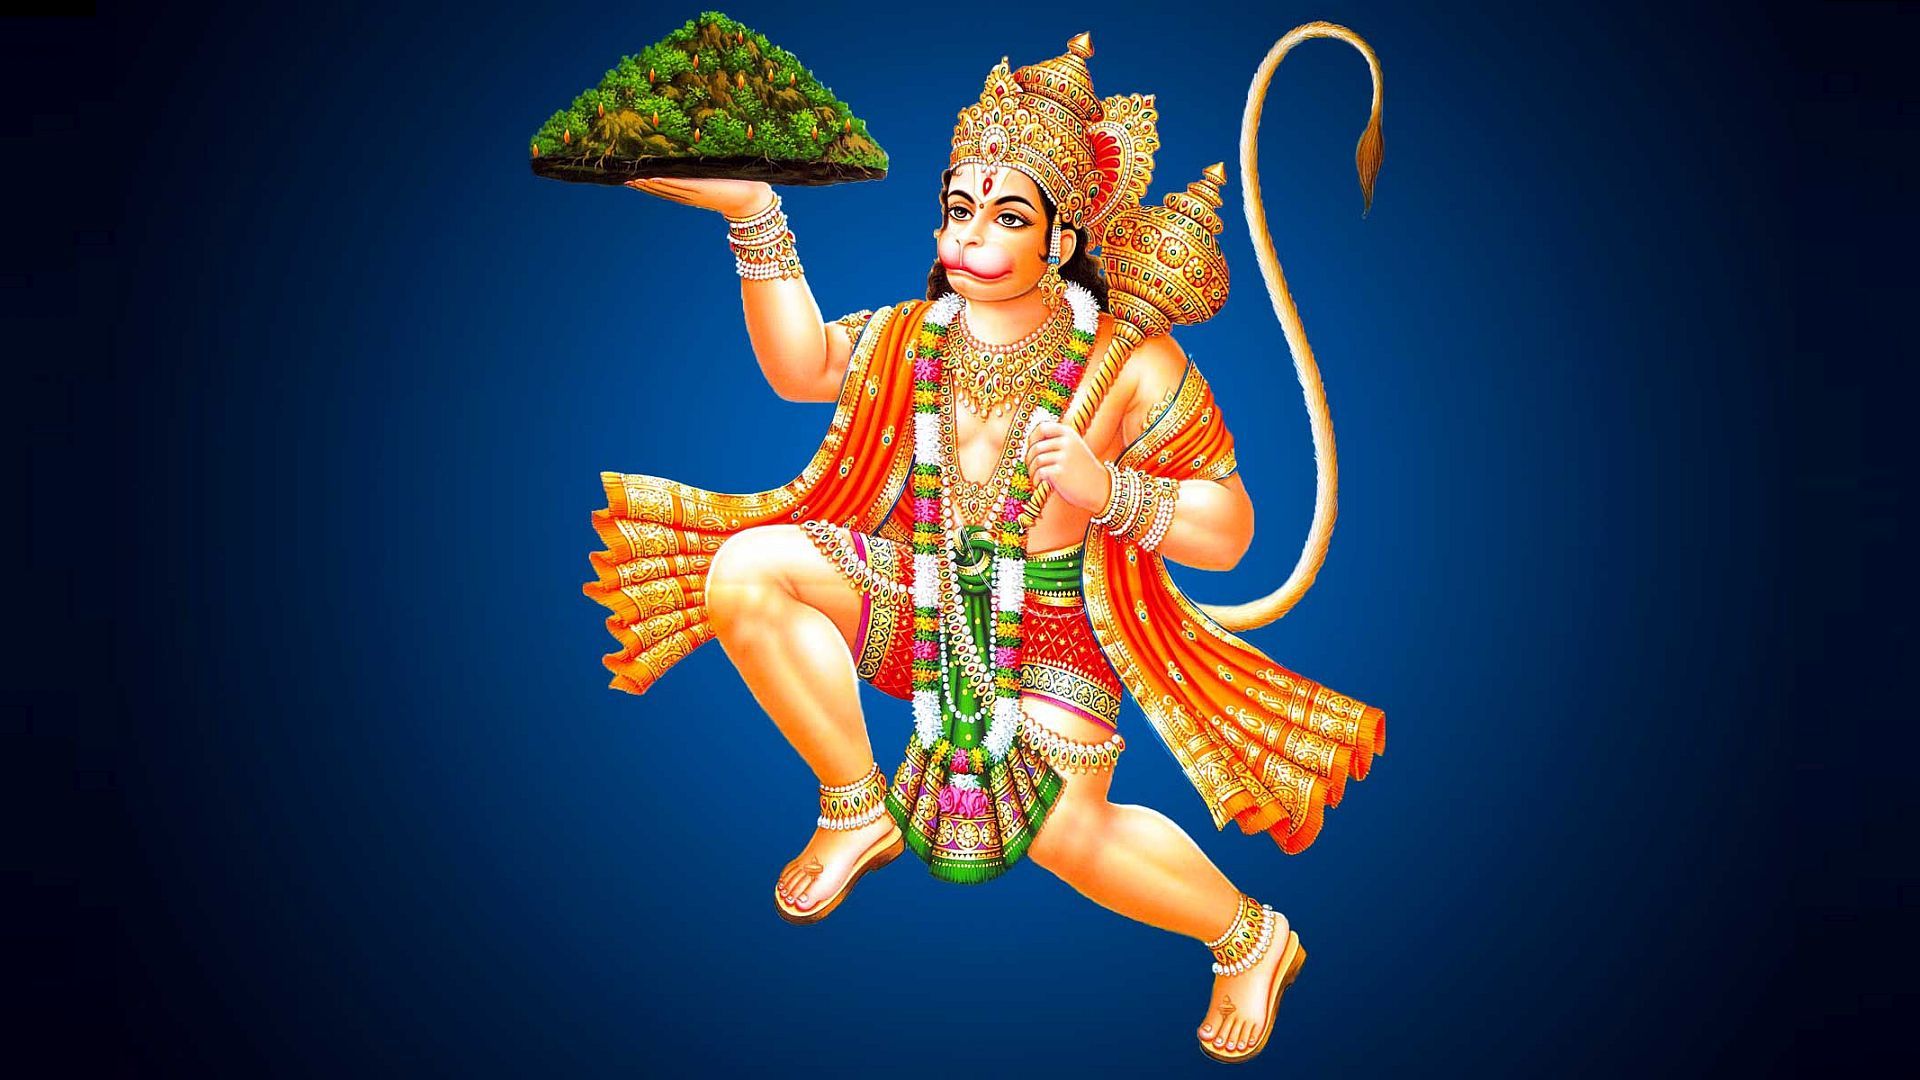 મેડિટેશન : આ મહામારીના સમયગાળામા નેગેટિવિટી અને માનસિક તણાવ દૂર કરવા માટે હનુમાનજી સામે રોજ સવારે ધ્યાન કરવું જોઈએ